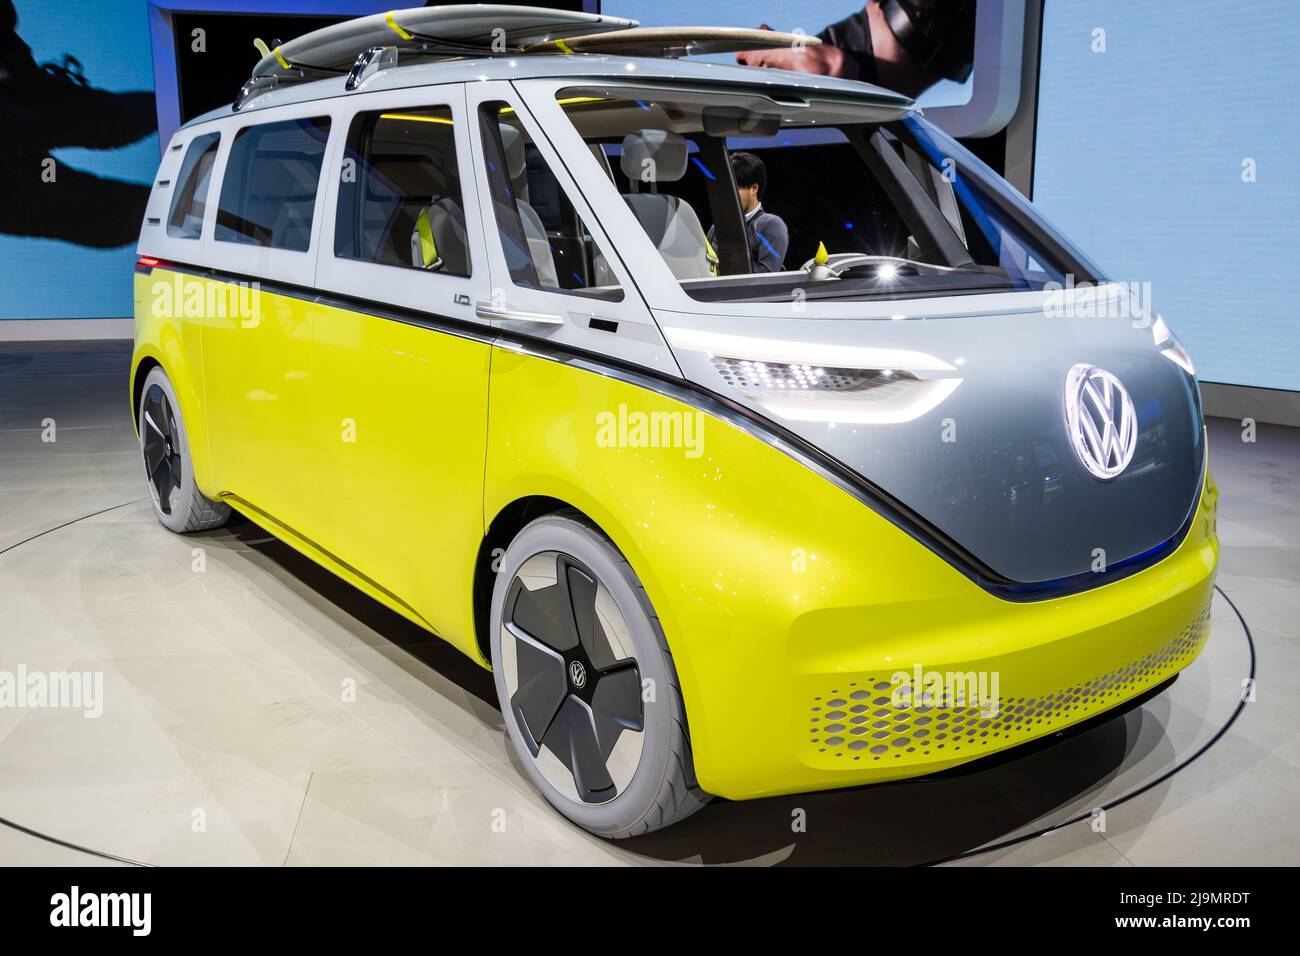 Volkswagen ID Buzz autocaravana eléctrica autoconductora se presentó en la feria de autos IAA de Frankfurt. Alemania - 12 de septiembre de 2017. Foto de stock